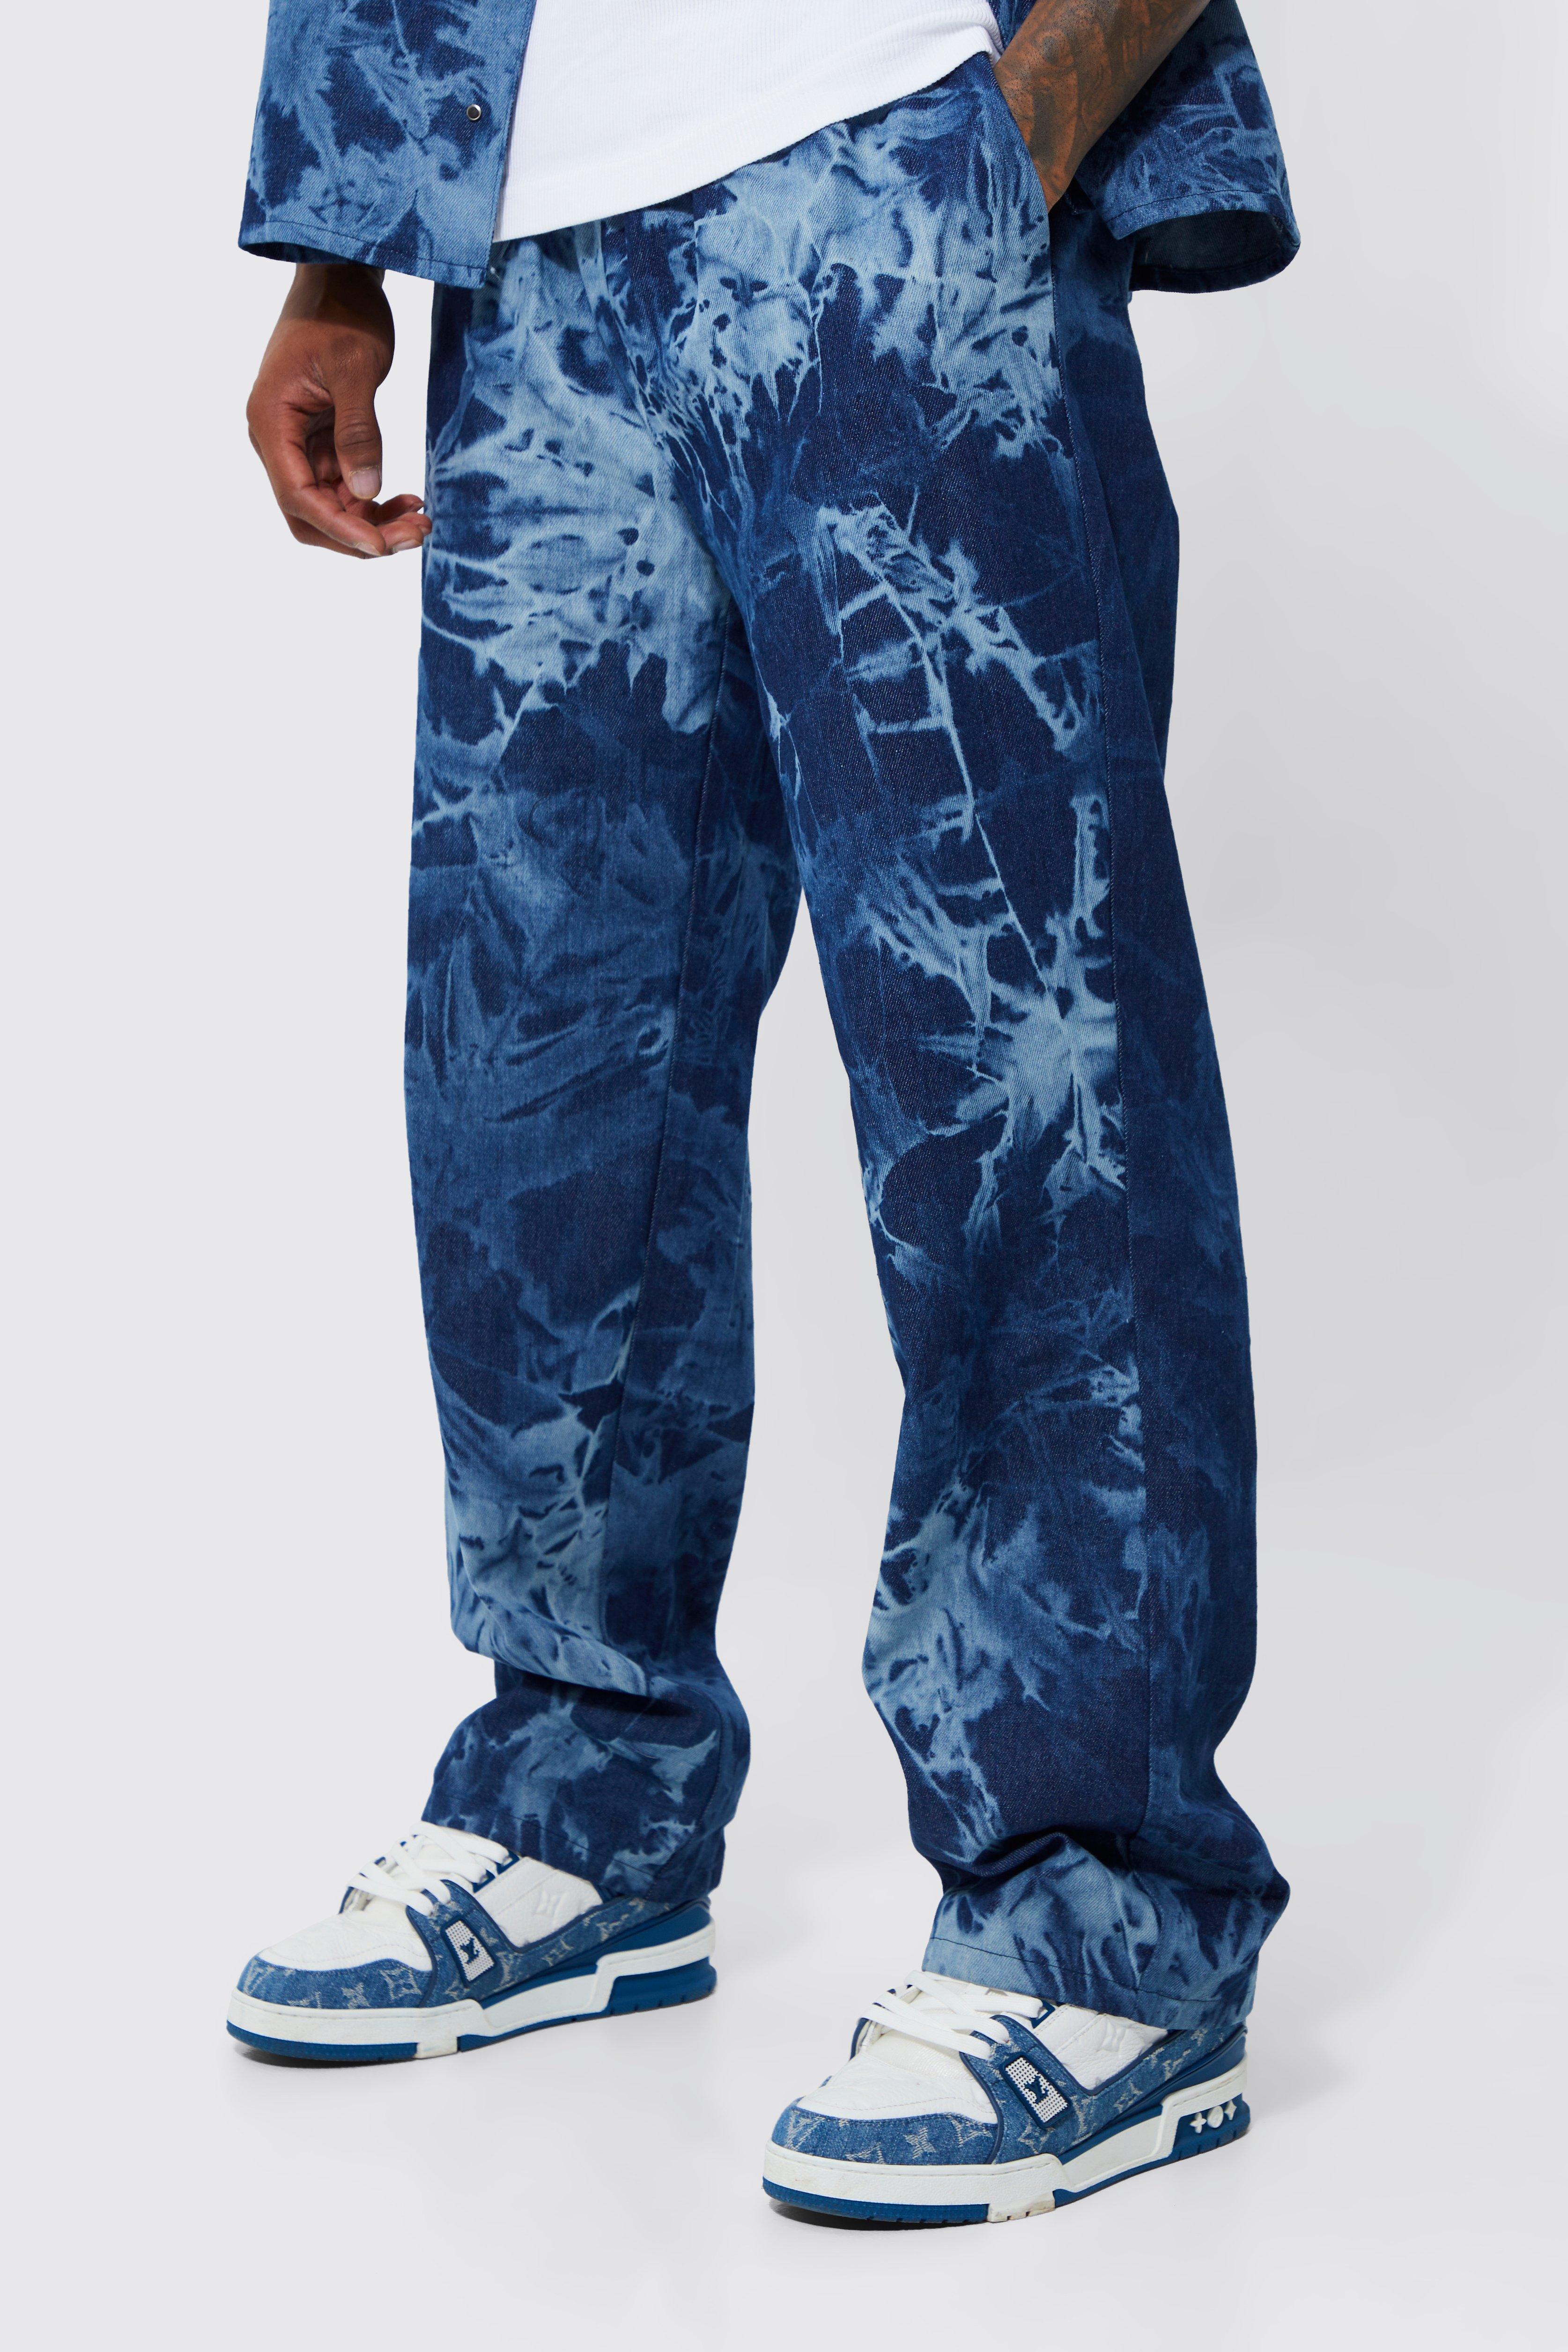 pantalon droit à taille élastique homme - bleu - xl, bleu